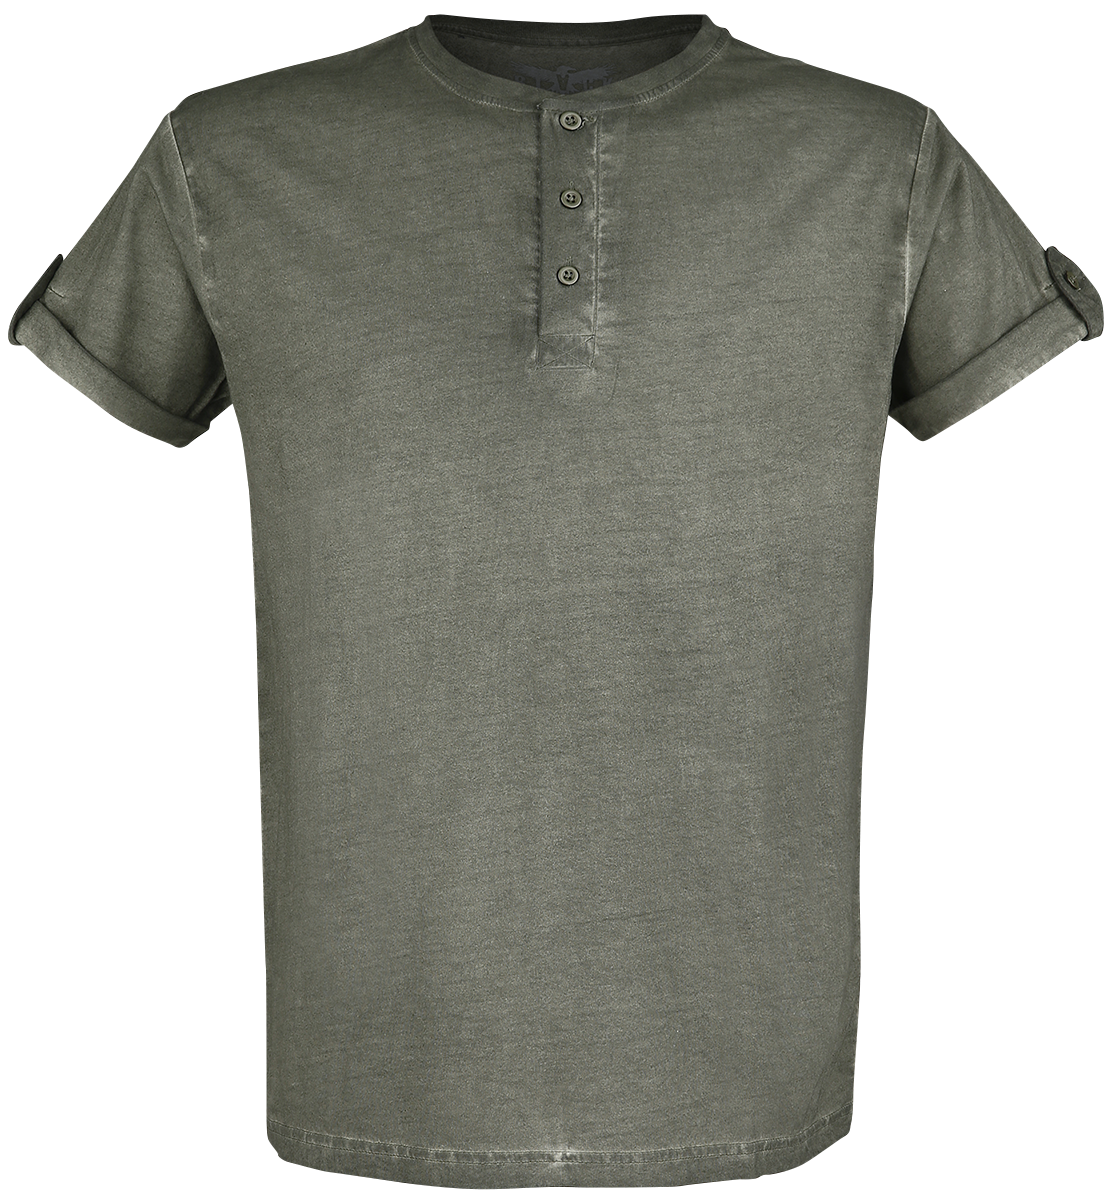 Black Premium by EMP - grünes T-Shirt mit Knopfleiste und umgeschlagenen Ärmeln - T-Shirt - grün - EMP Exklusiv!